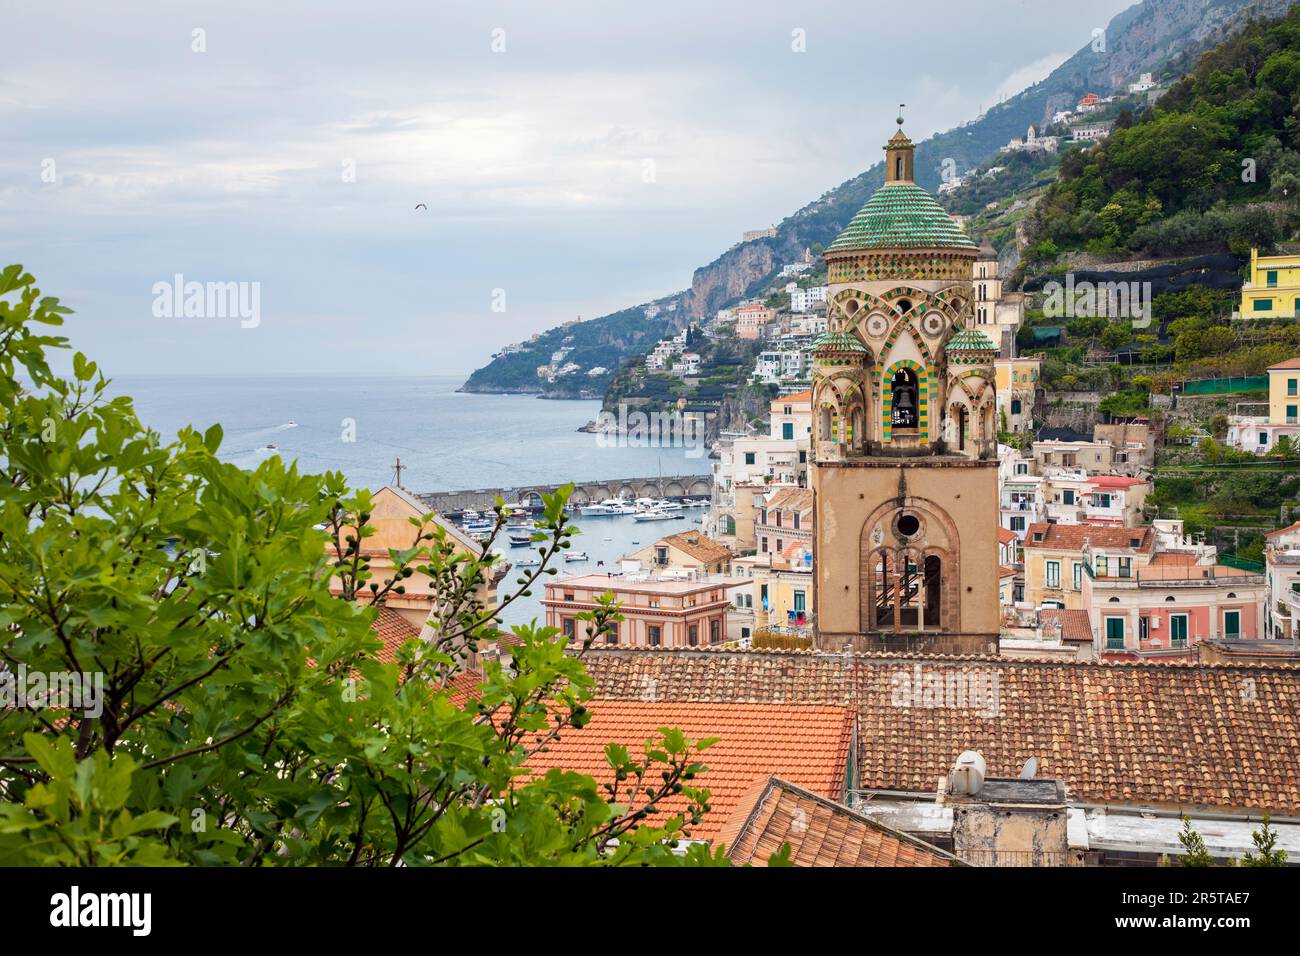 AMALF TOWN, ITALY - APRILE 30th 2023: Vista sul villaggio di Amalfi, un resort sulla costa italiana circondato da scogliere e paesaggi costieri. Foto Stock